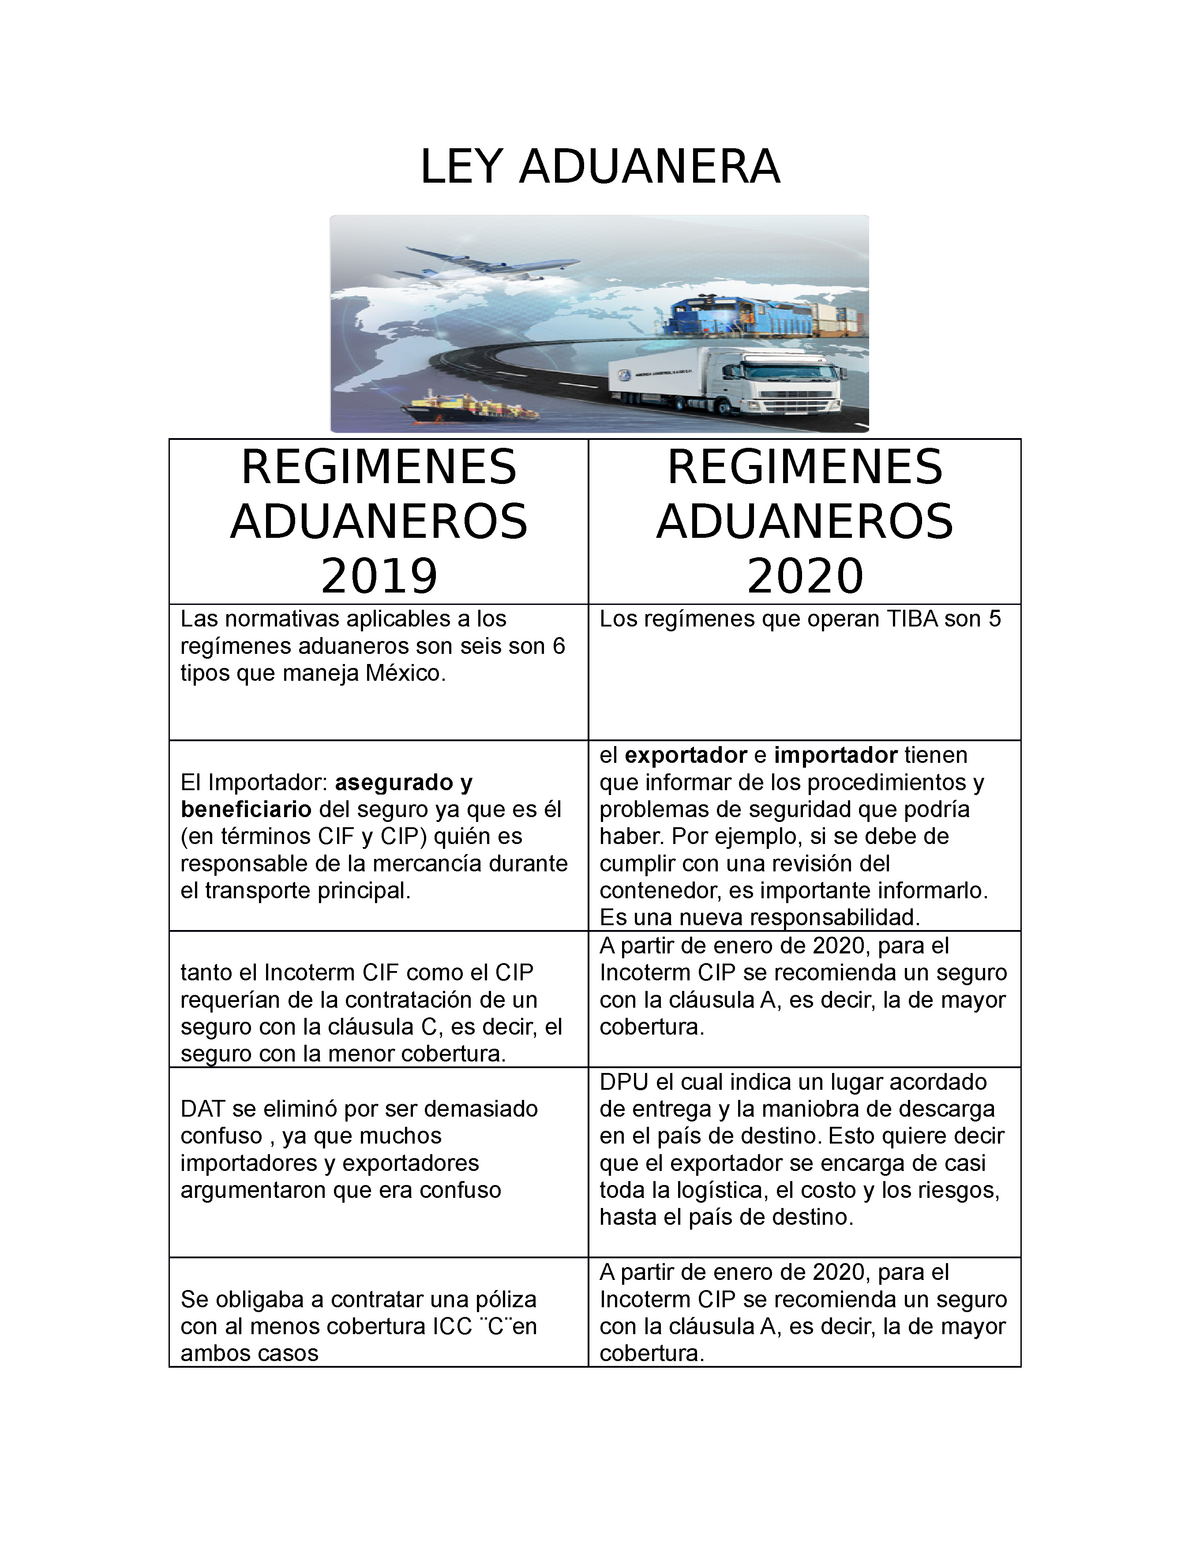 Ley De Auduanas Cuadro Comparativo De Regimenes Aduaneros 2019 2020 Ley Aduanera Regimenes 1584